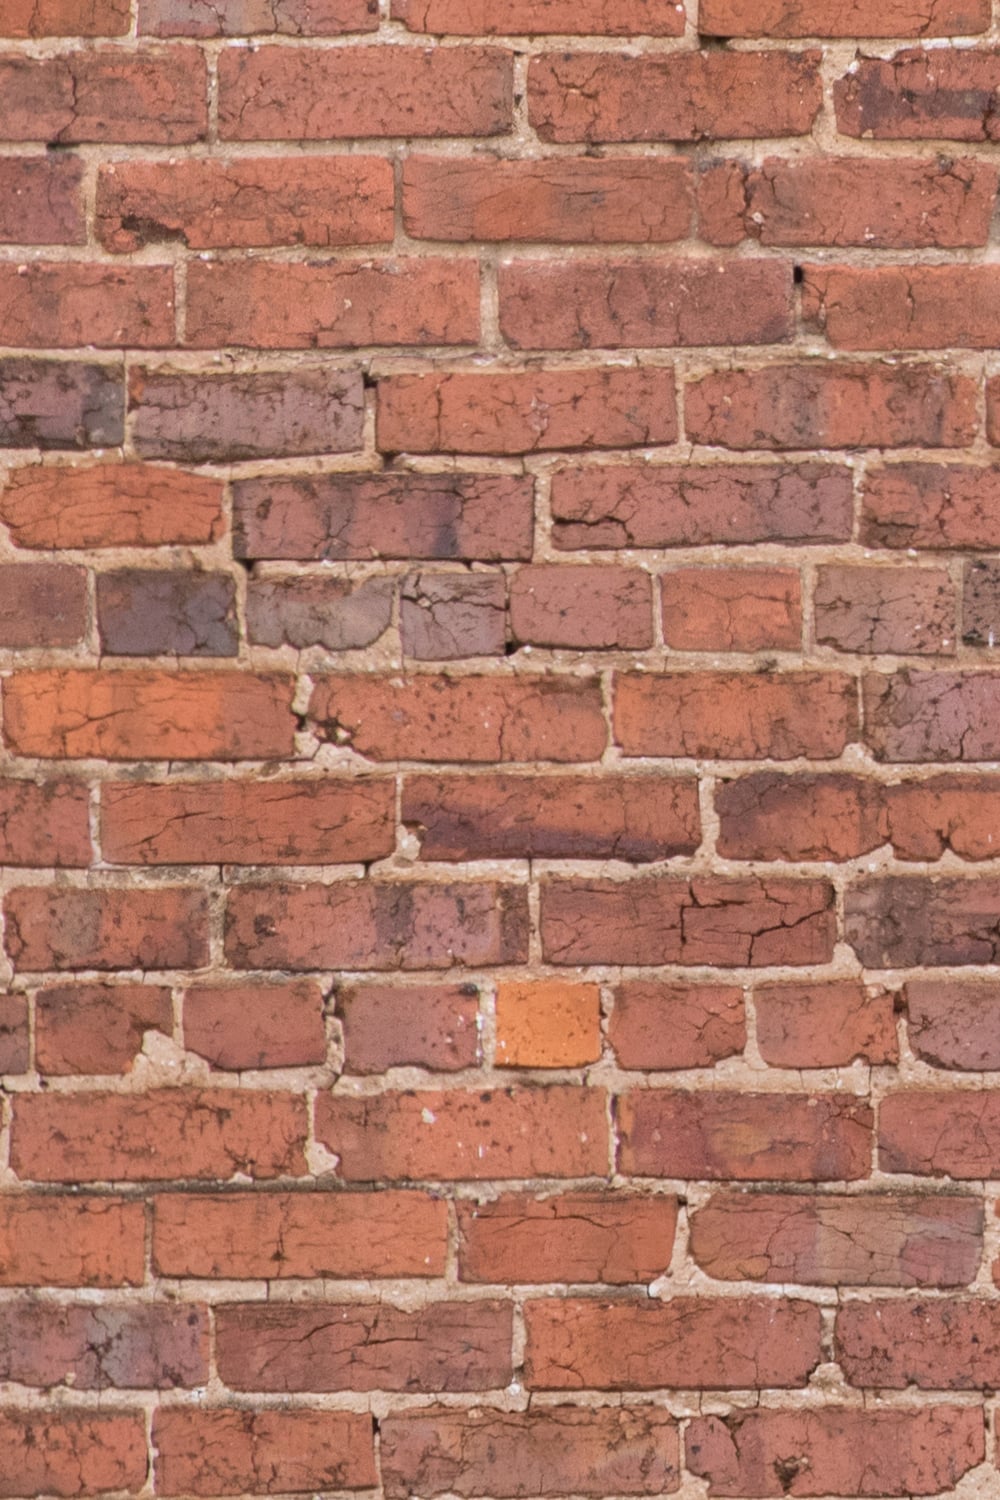 brick wall texture close-up